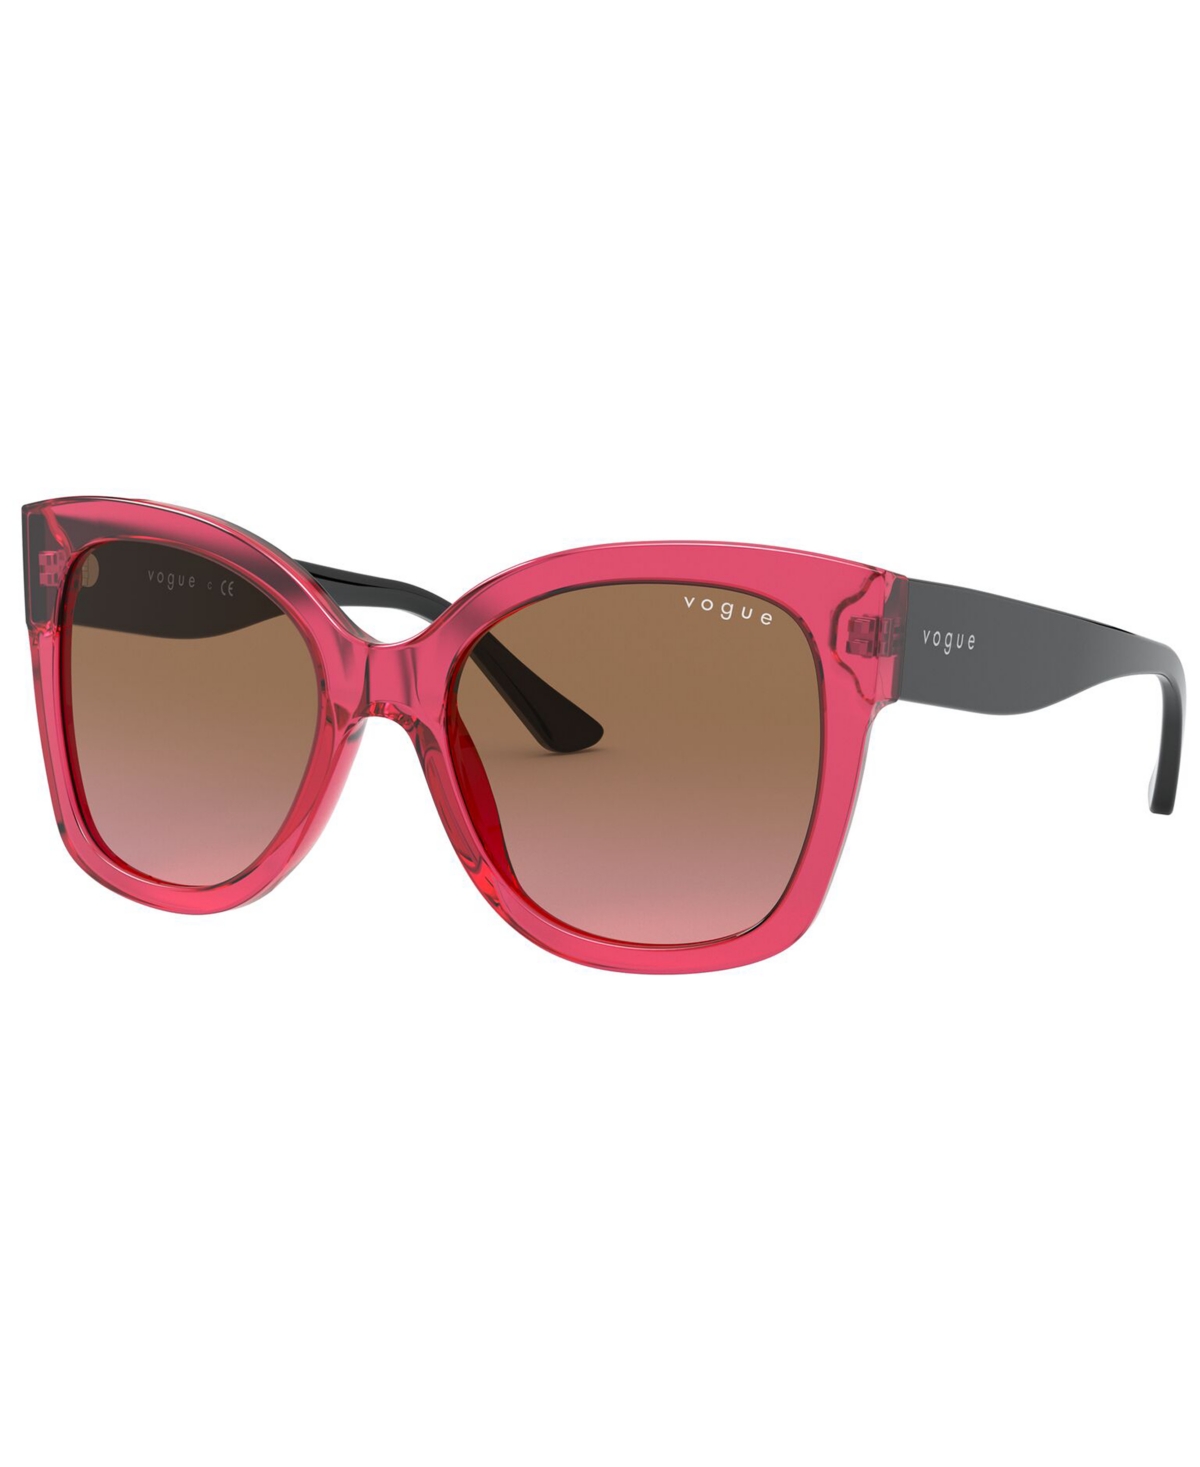 Vogue Eyewear Women's Sunglasses, Vo5338s In Transparent Cherry,violet Gradient Brown